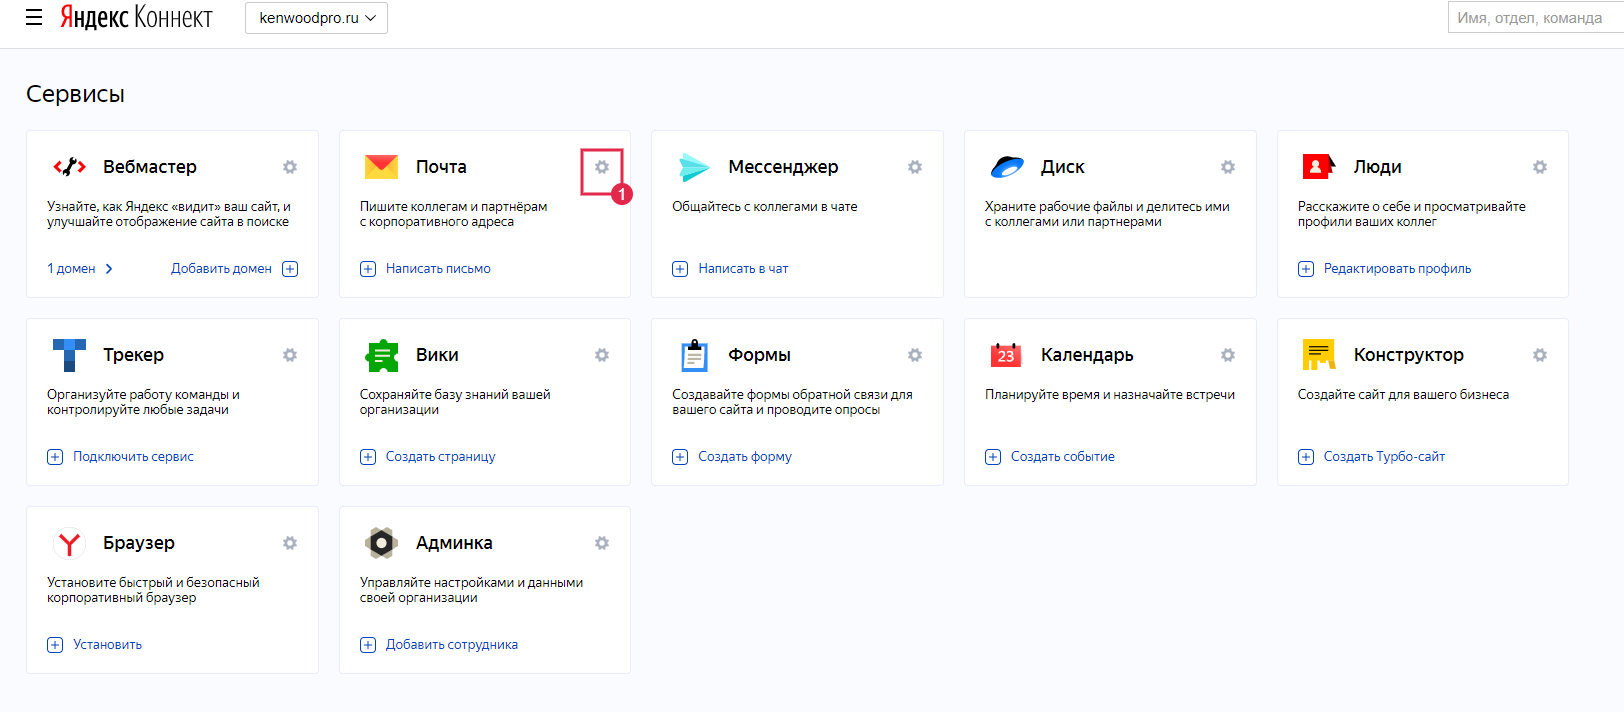 Почта на Яндексе со своим доменом.